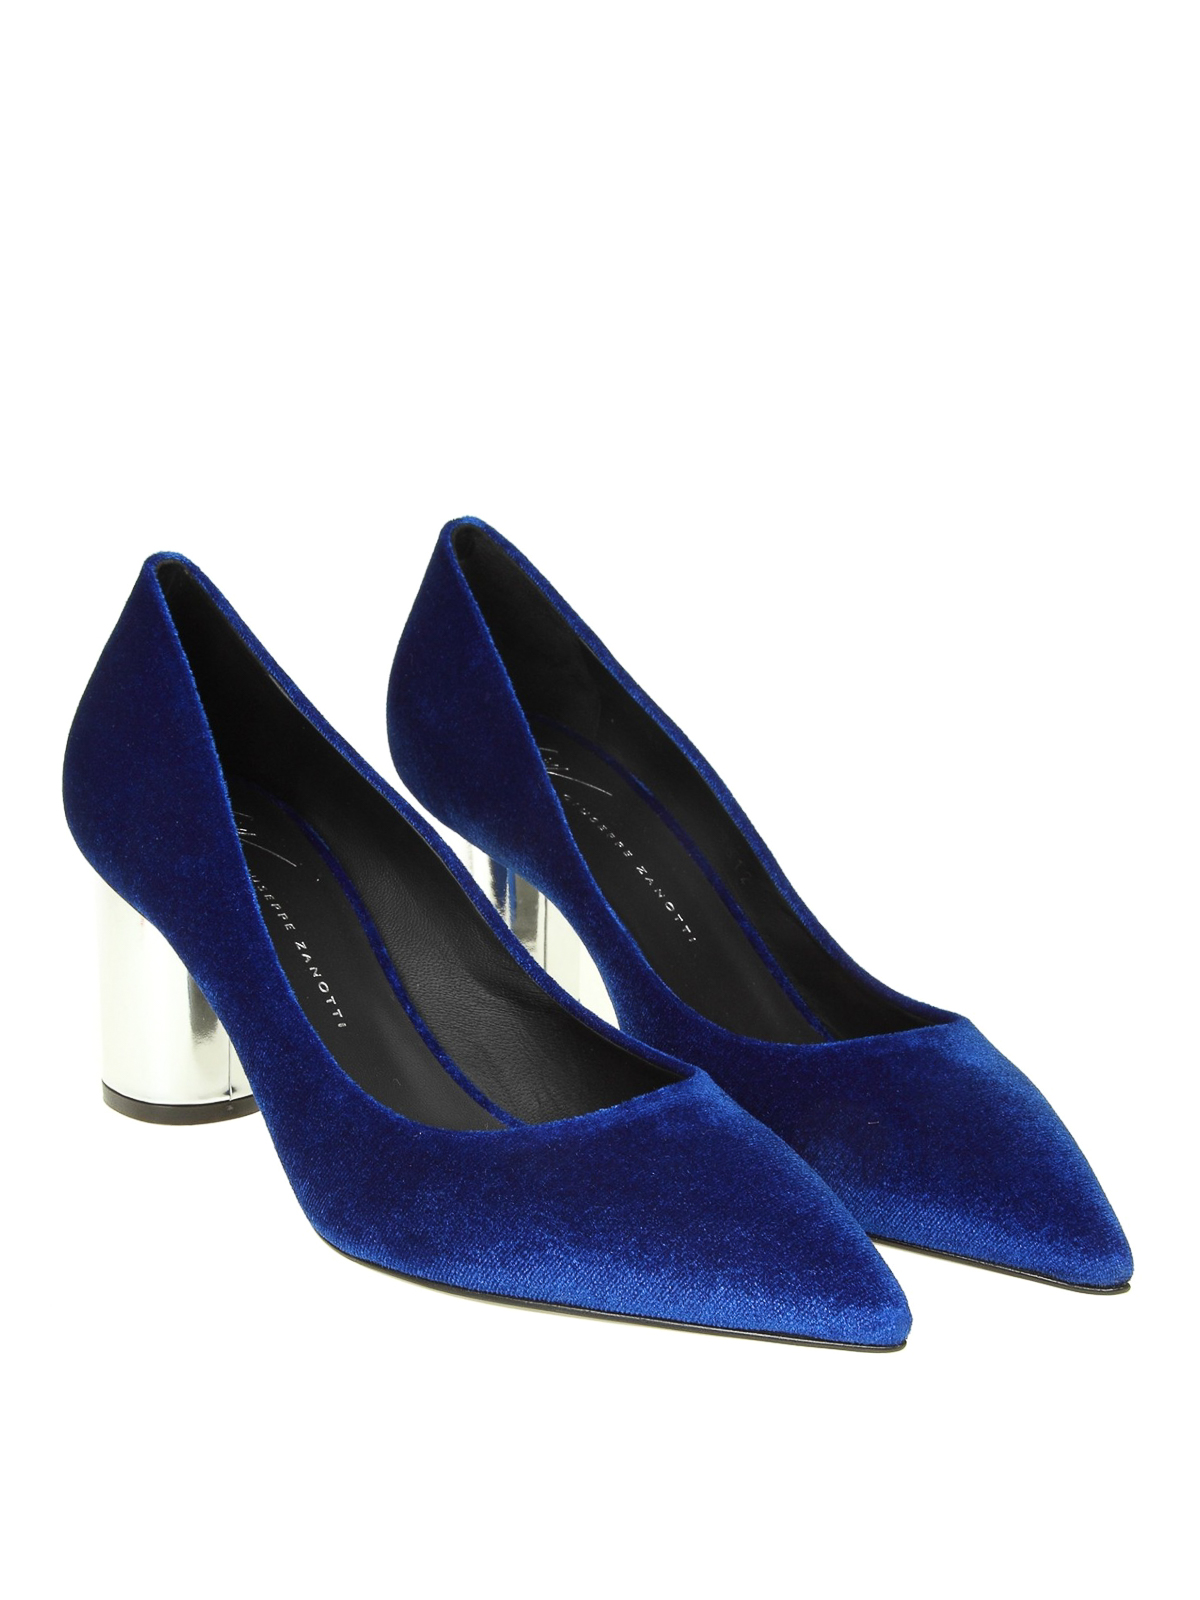 royal blue giuseppe shoes